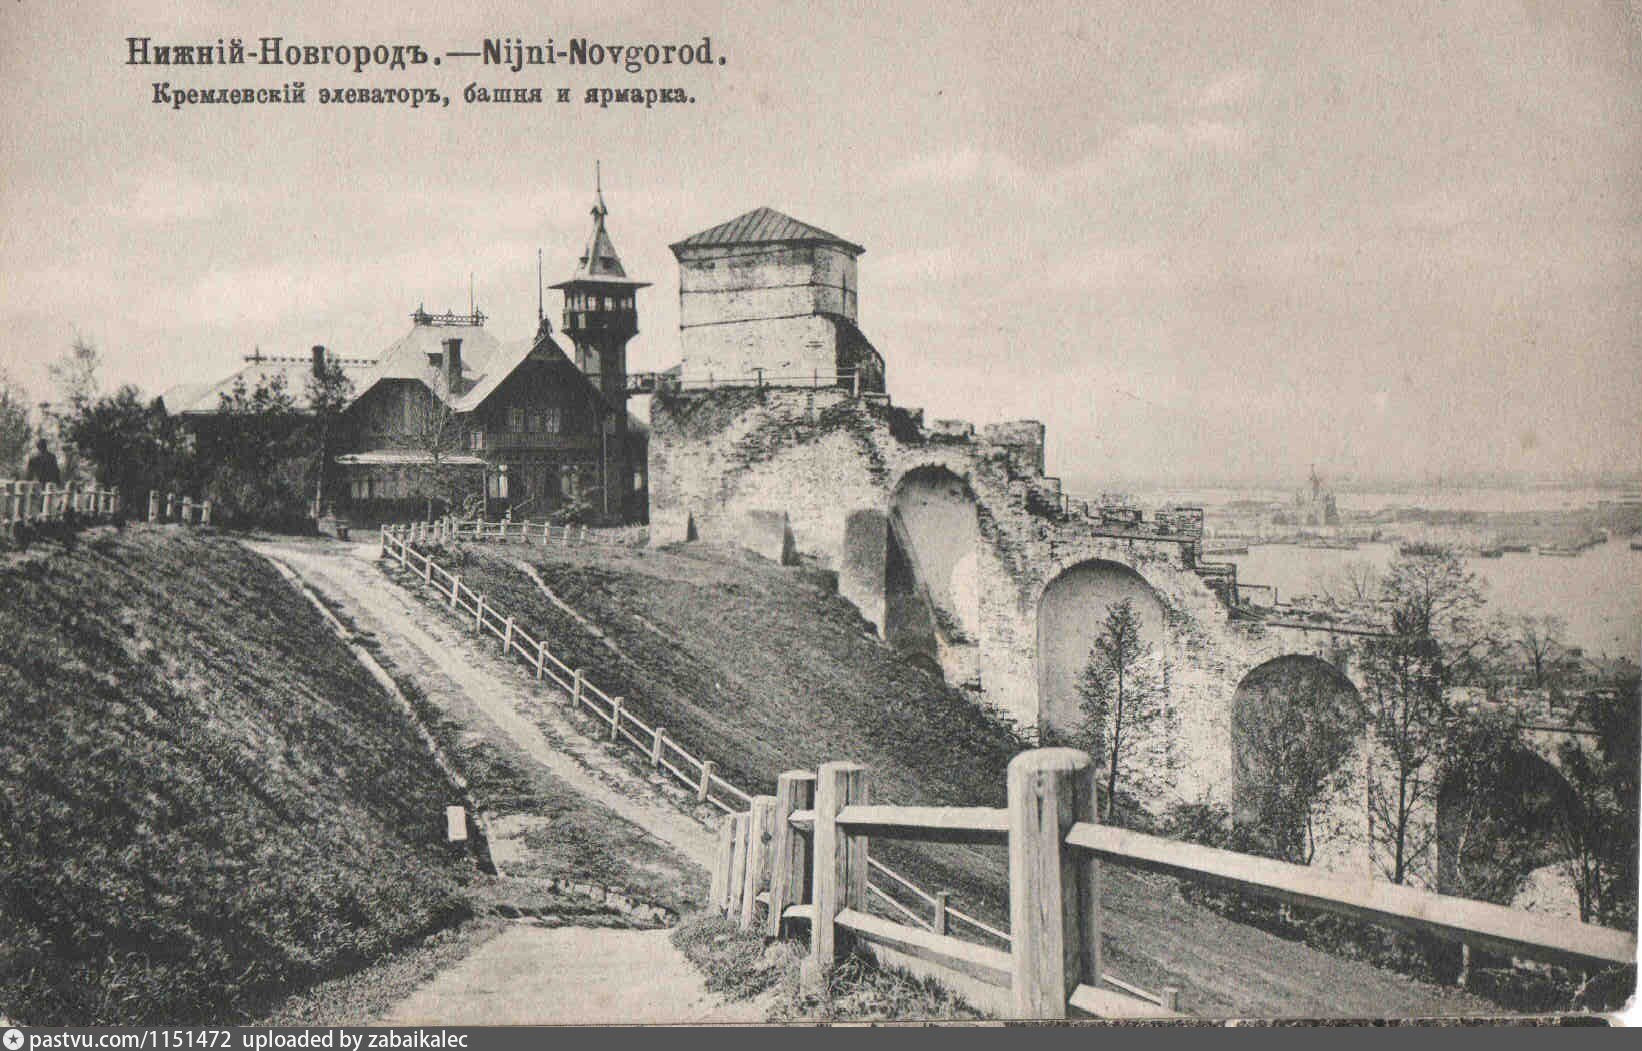 Кремлёвский элеватор, башня и ярмарка - старая фотография